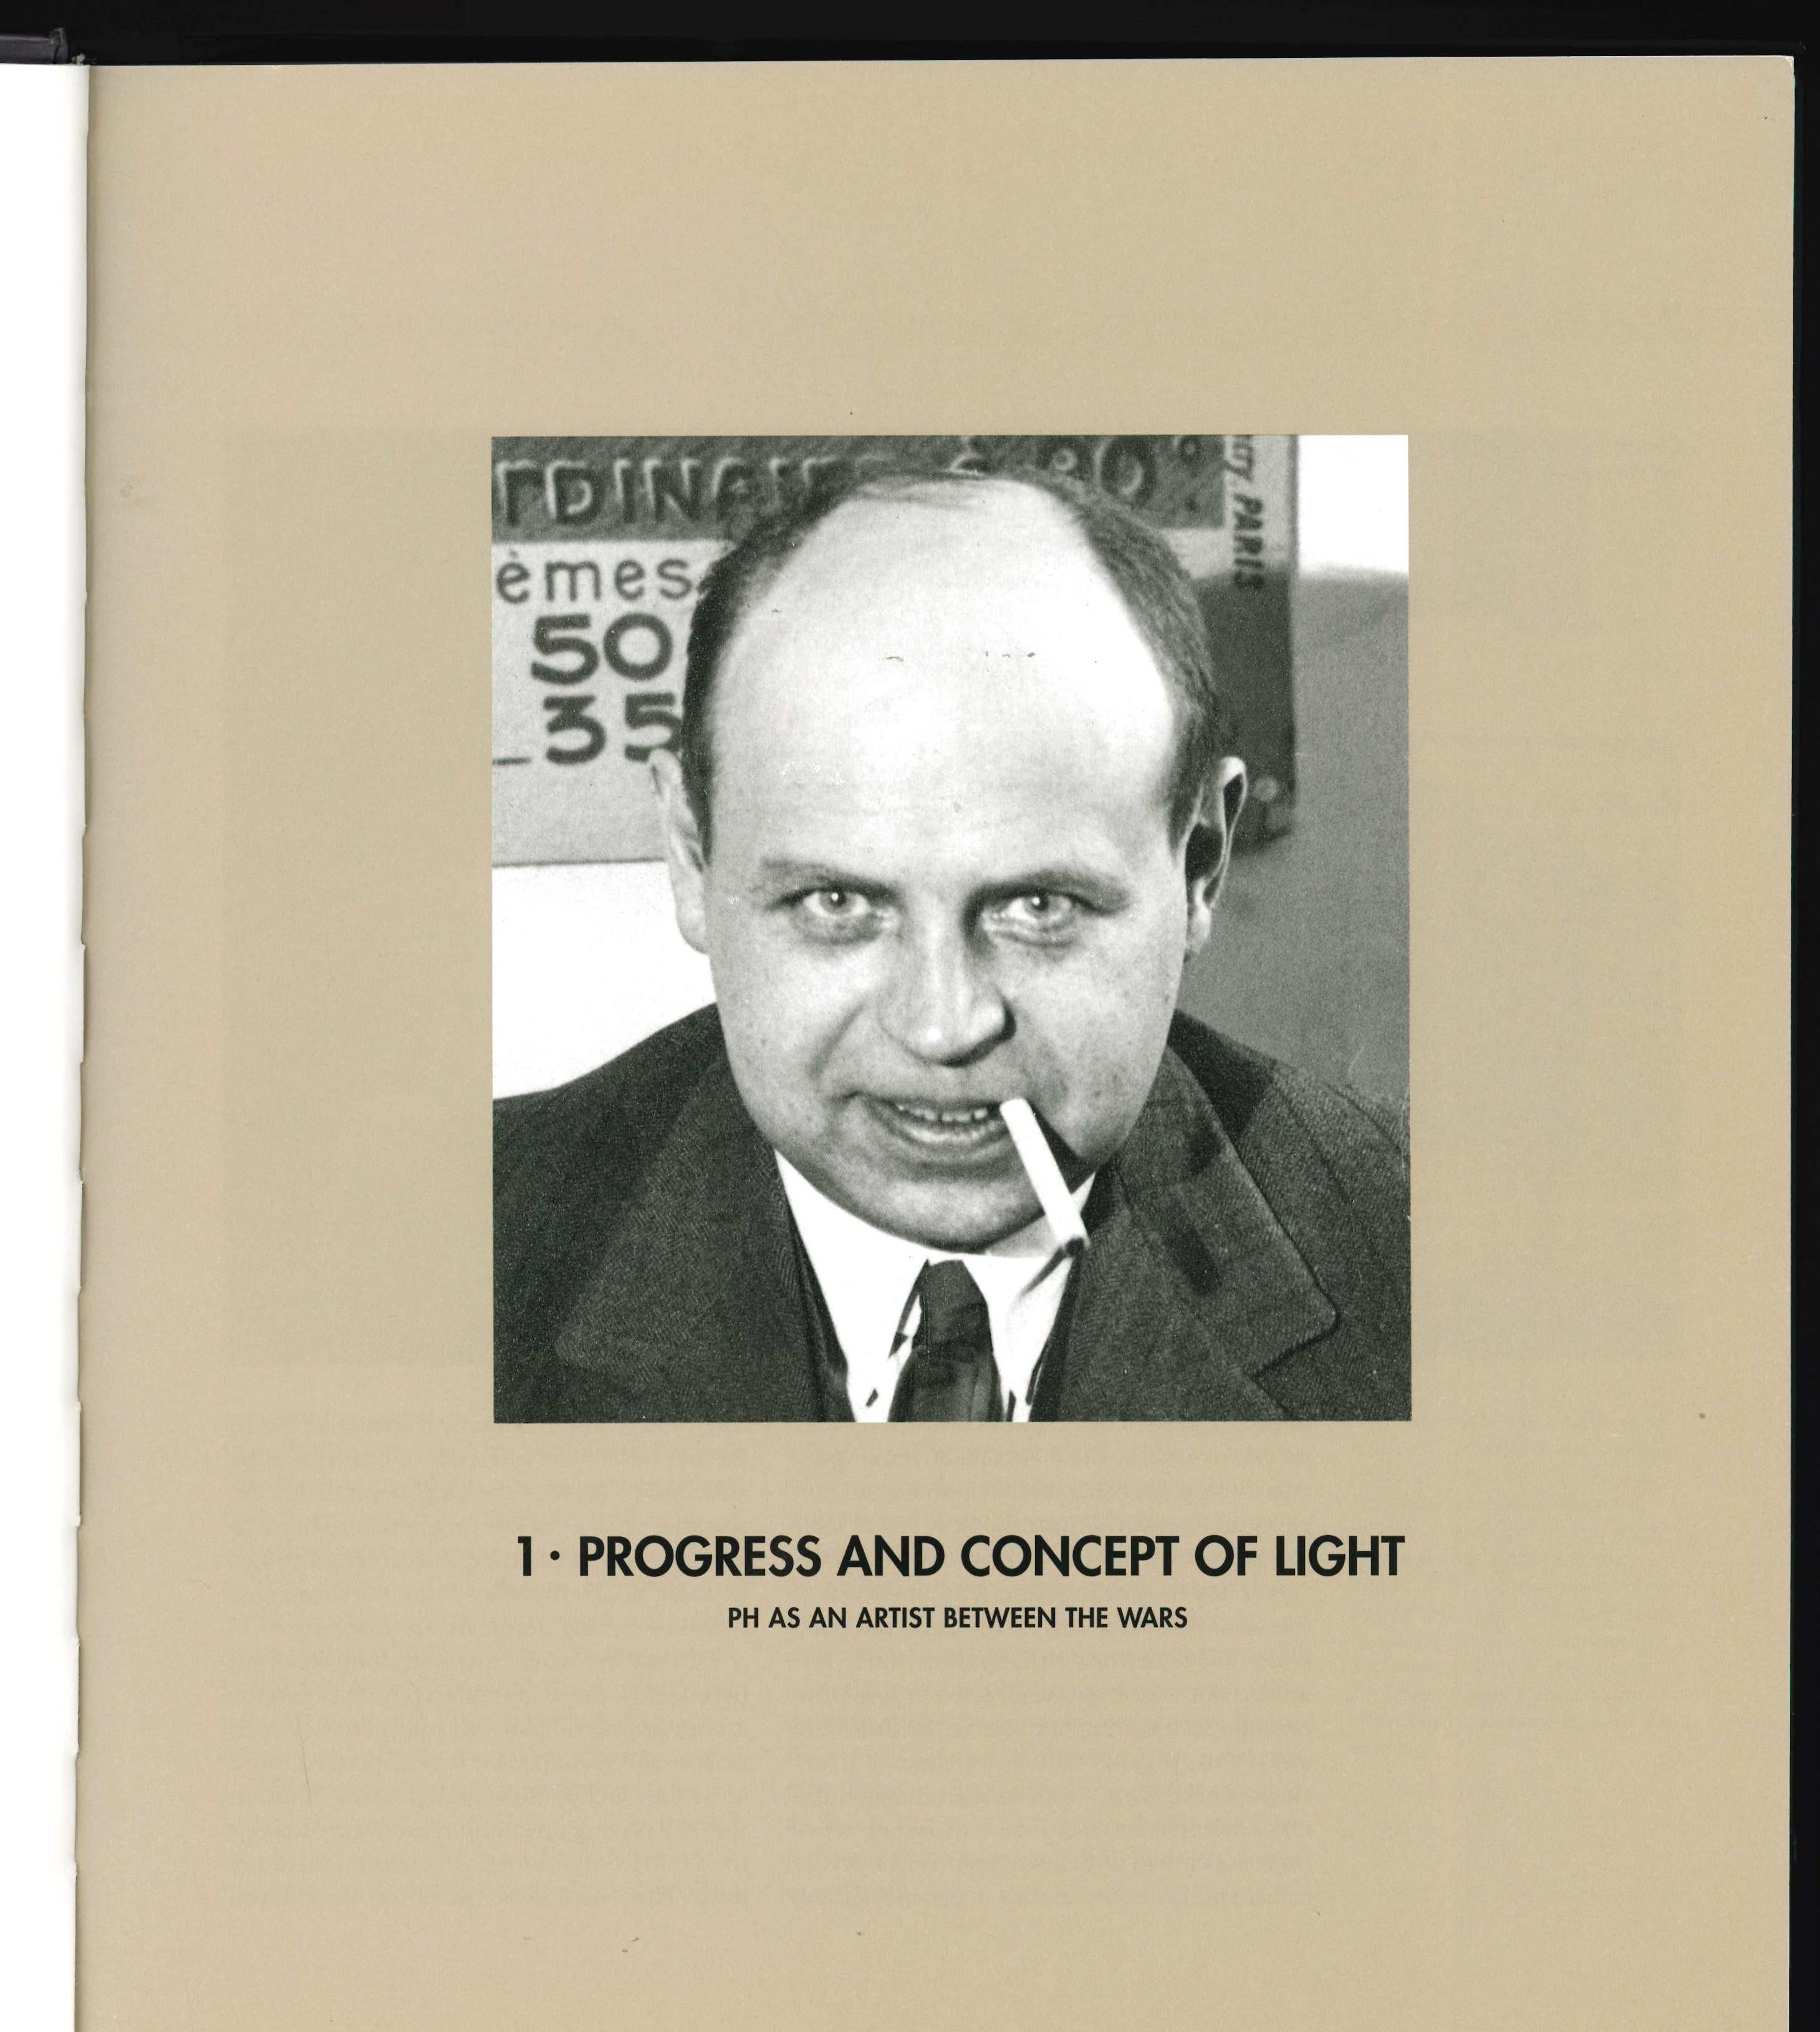 par Tina Jorstian & Poul Erik Munk Nielson
Light Years Ahead décrit le rôle de Poul Henningsen dans l'évolution des luminaires. Dès le début, son travail sur les lampes a été guidé par le désir d'améliorer l'éclairage électrique. En ce sens, ses